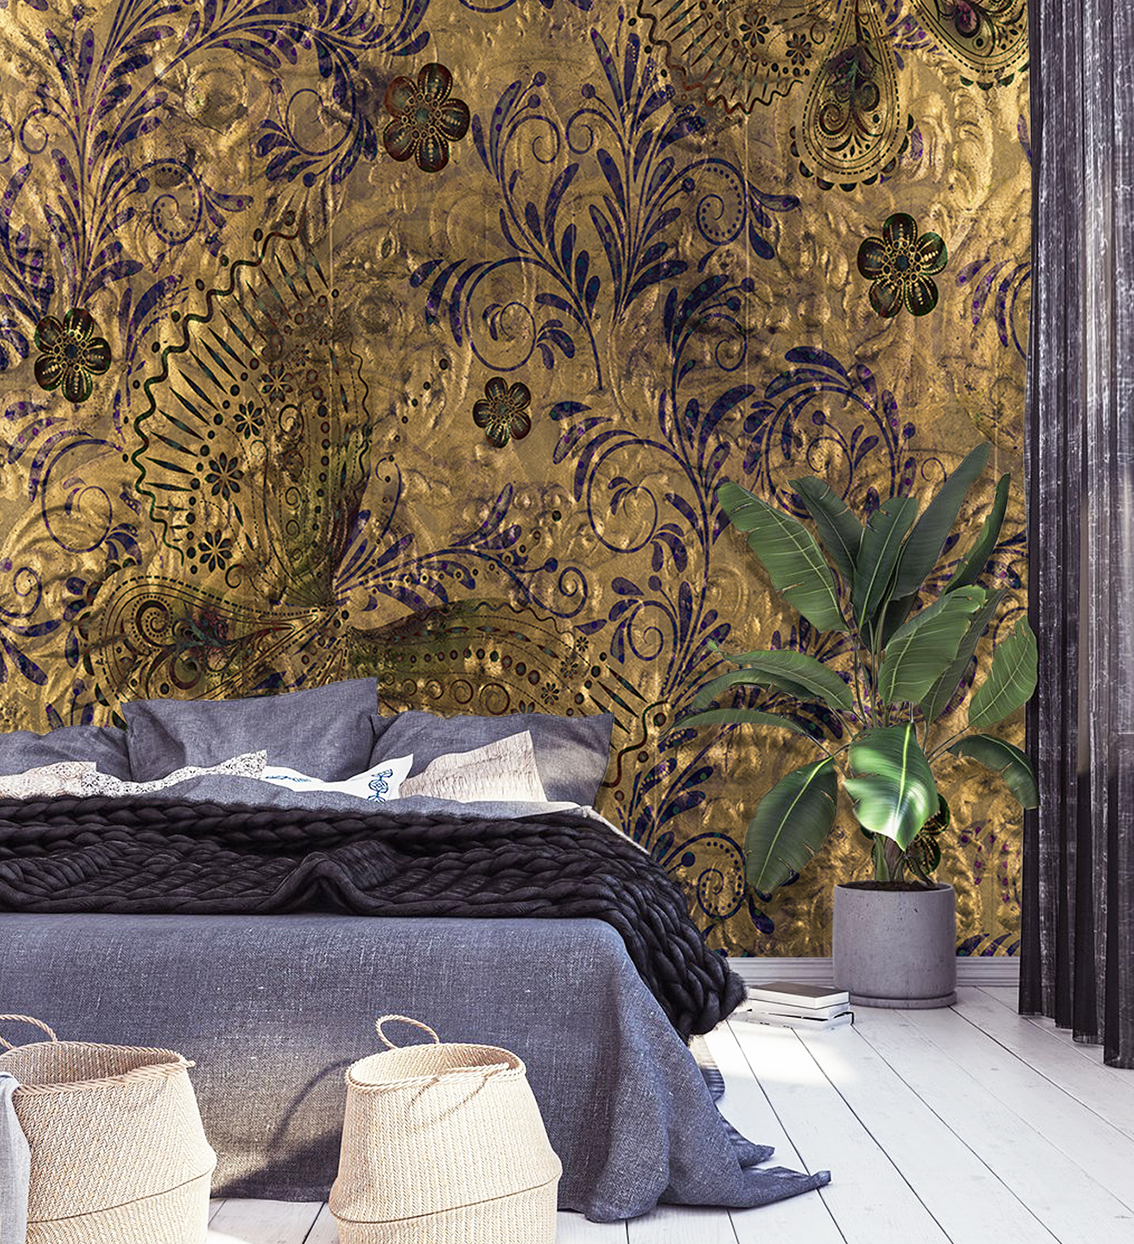 La Aurelia Design Presents New Wallpaper-designs!